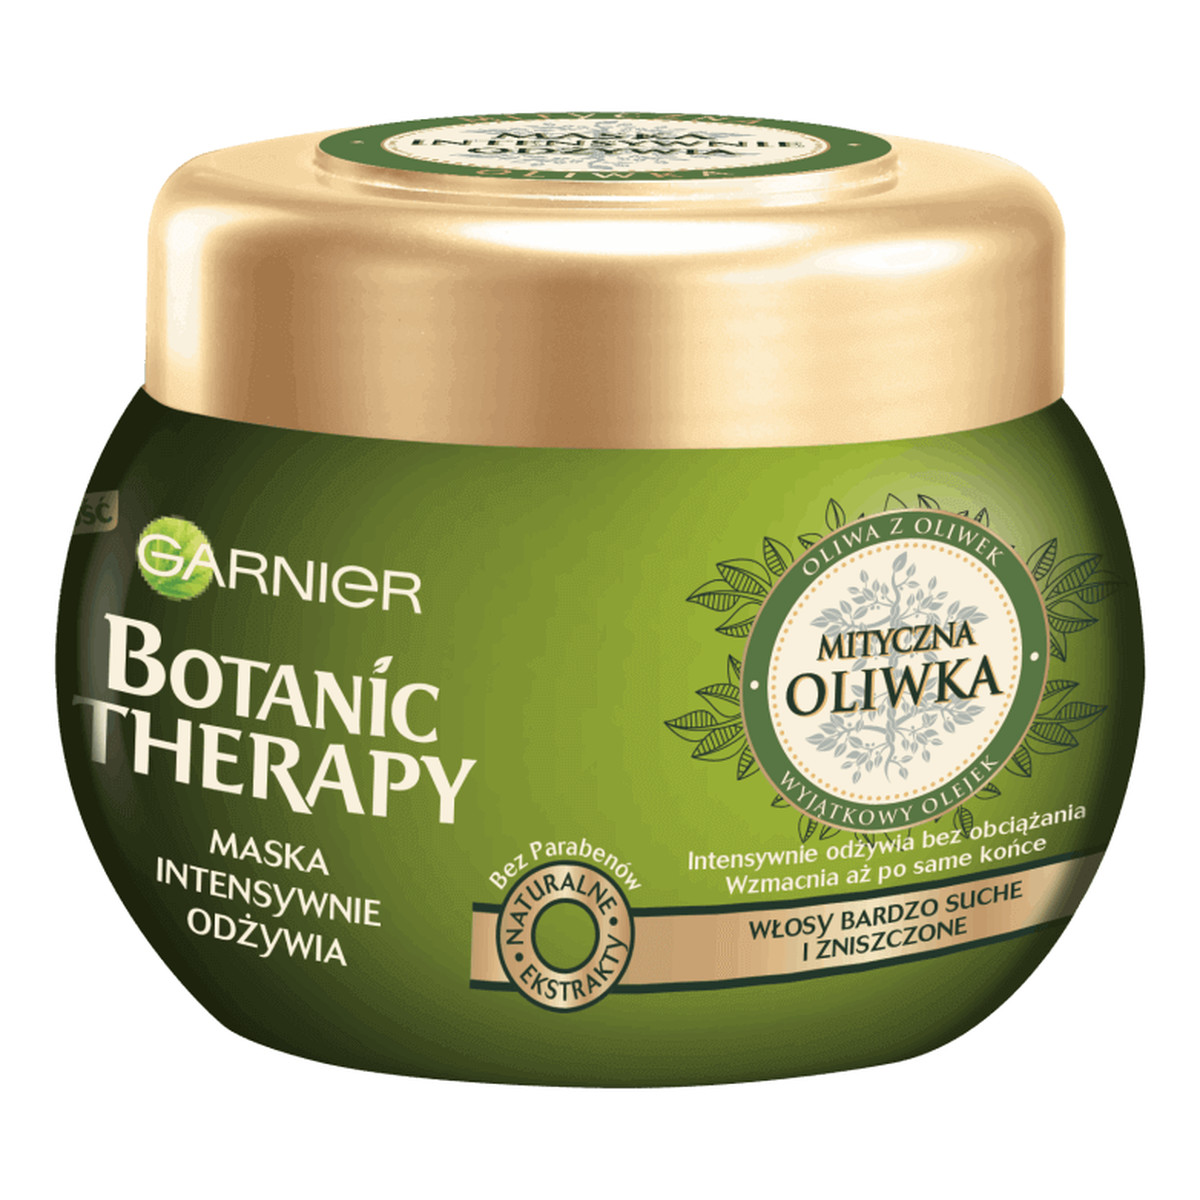 Garnier Botanic Therapy maska intensywnie odżywia Mityczna Oliwka 300ml